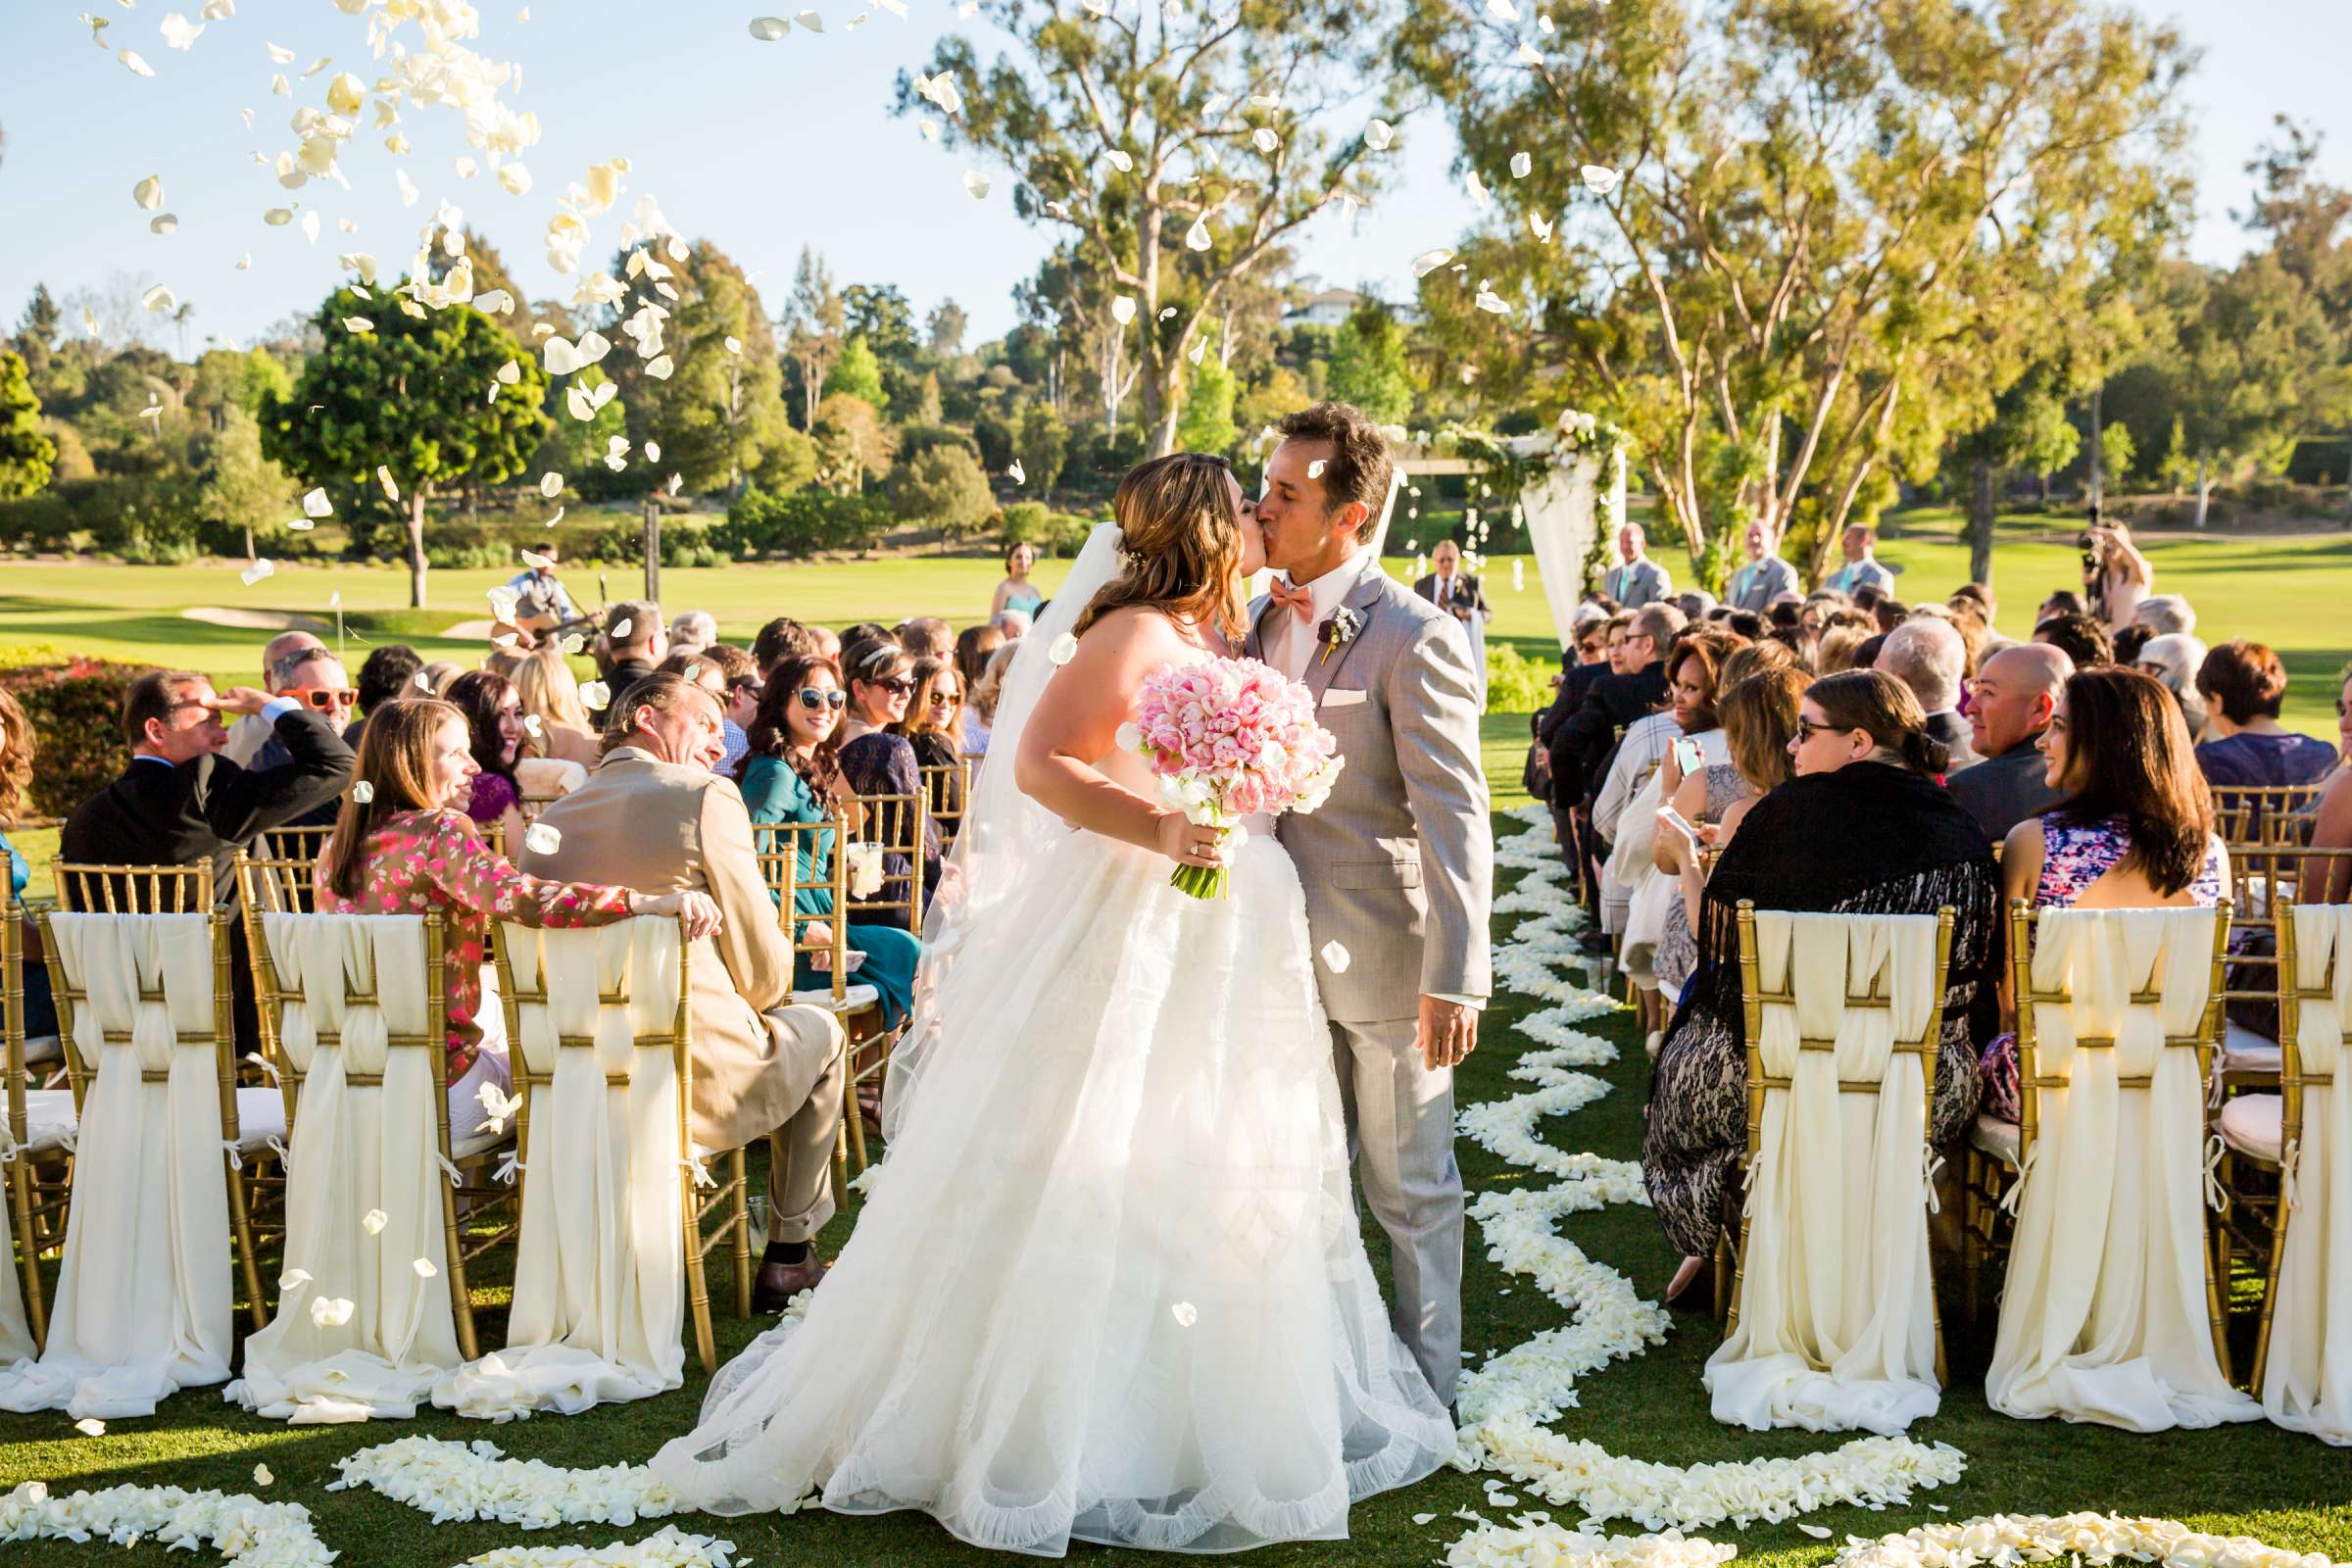 Rancho Santa Fe Golf Club Wedding coordinated by Monarch Weddings, Carolynn and Jon Wedding Photo #18 by True Photography